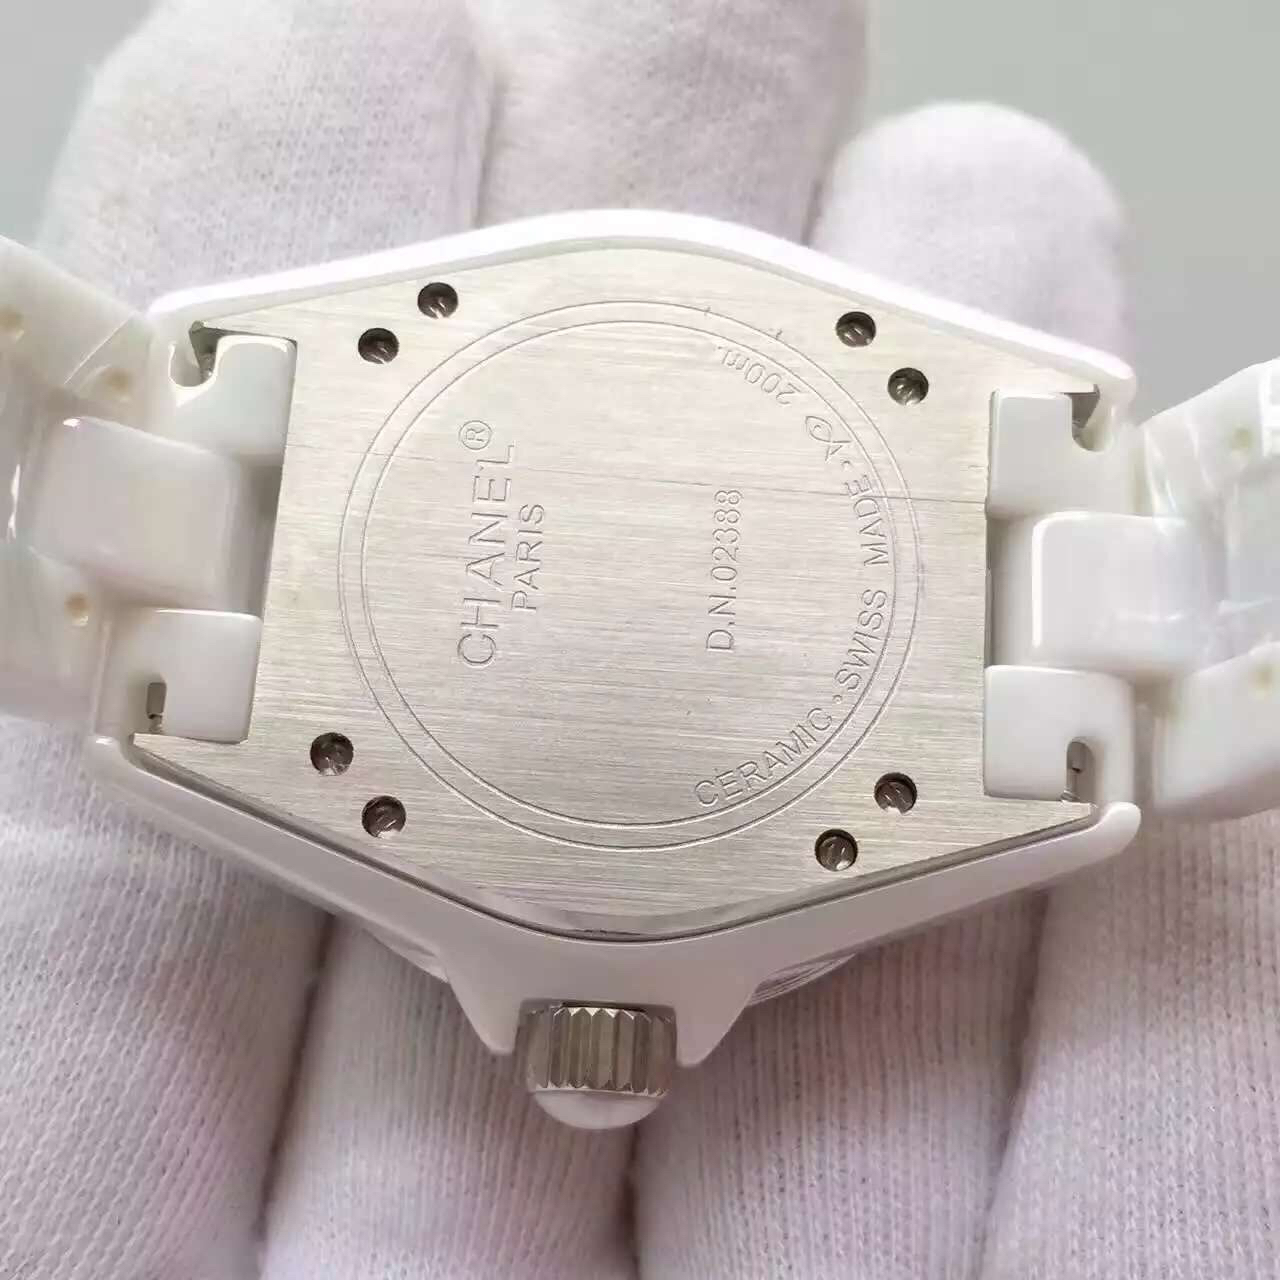 2022122611451164 - 仿香奈兒手錶j12價格 香奈兒J12繫列H2013中性機械手錶￥2880